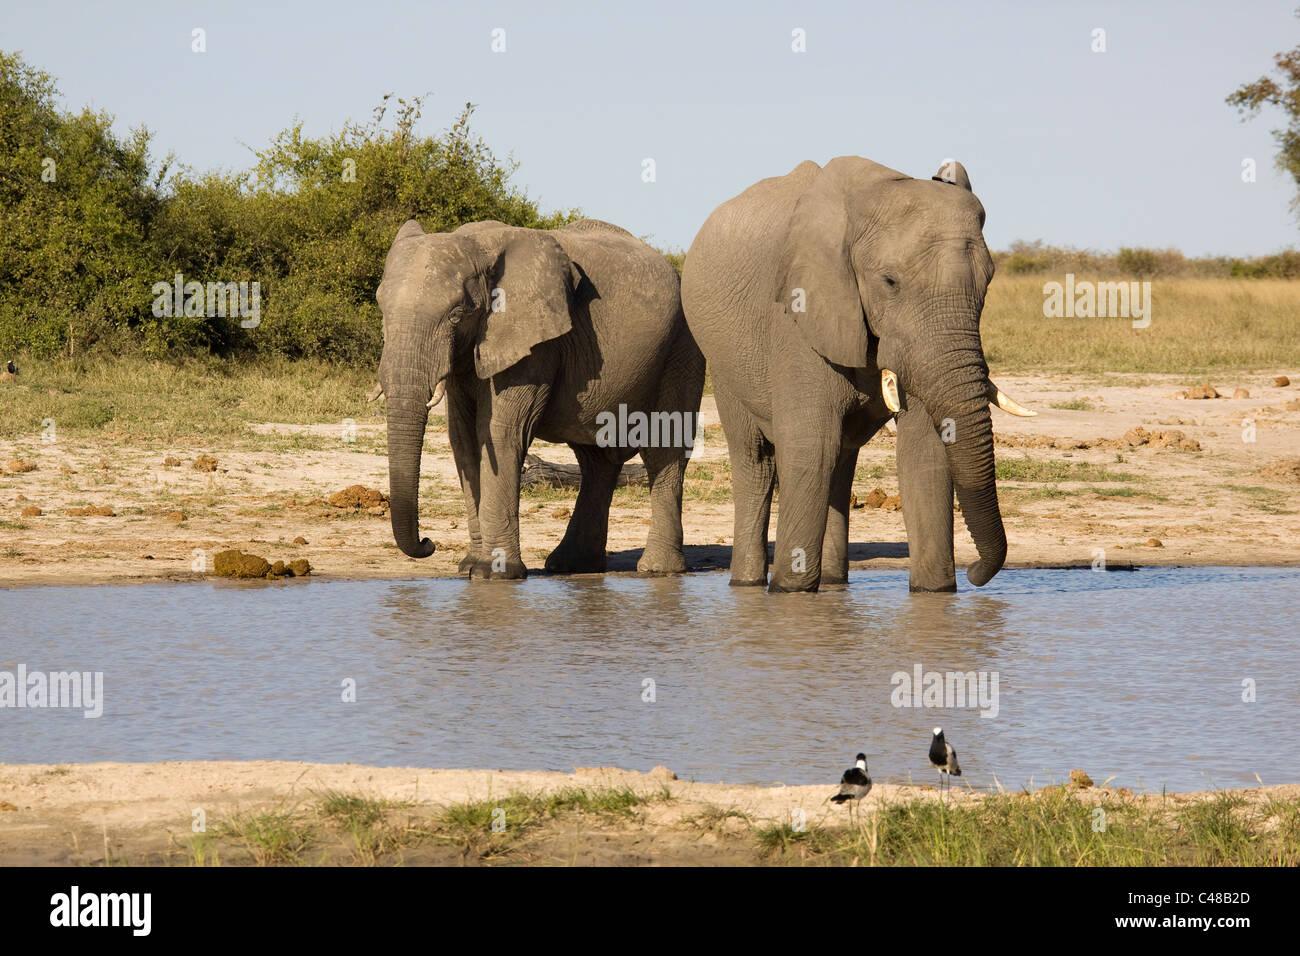 Afrikanische Elefanten (Loxodonta africana) beim Trinken suis natürlichen Wasserloch, Savuti, Botswana, Afrika Banque D'Images